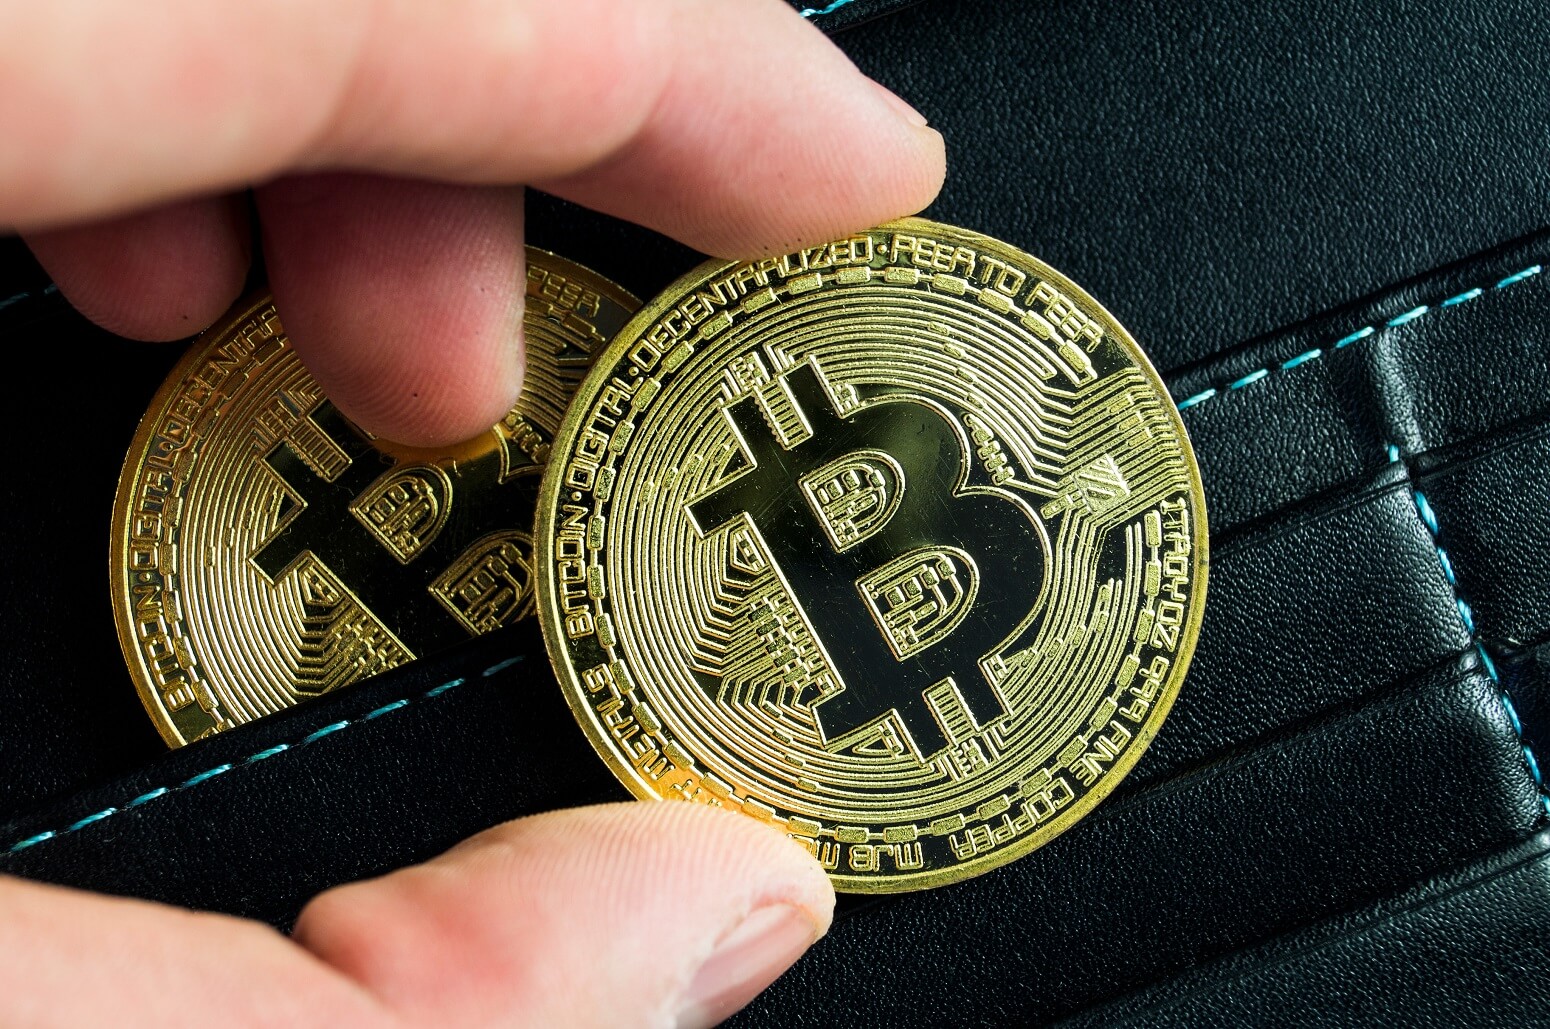 Eine seit 12 Jahren ruhende Bitcoin-Wallet bewegt sich plötzlich um 500 BTC